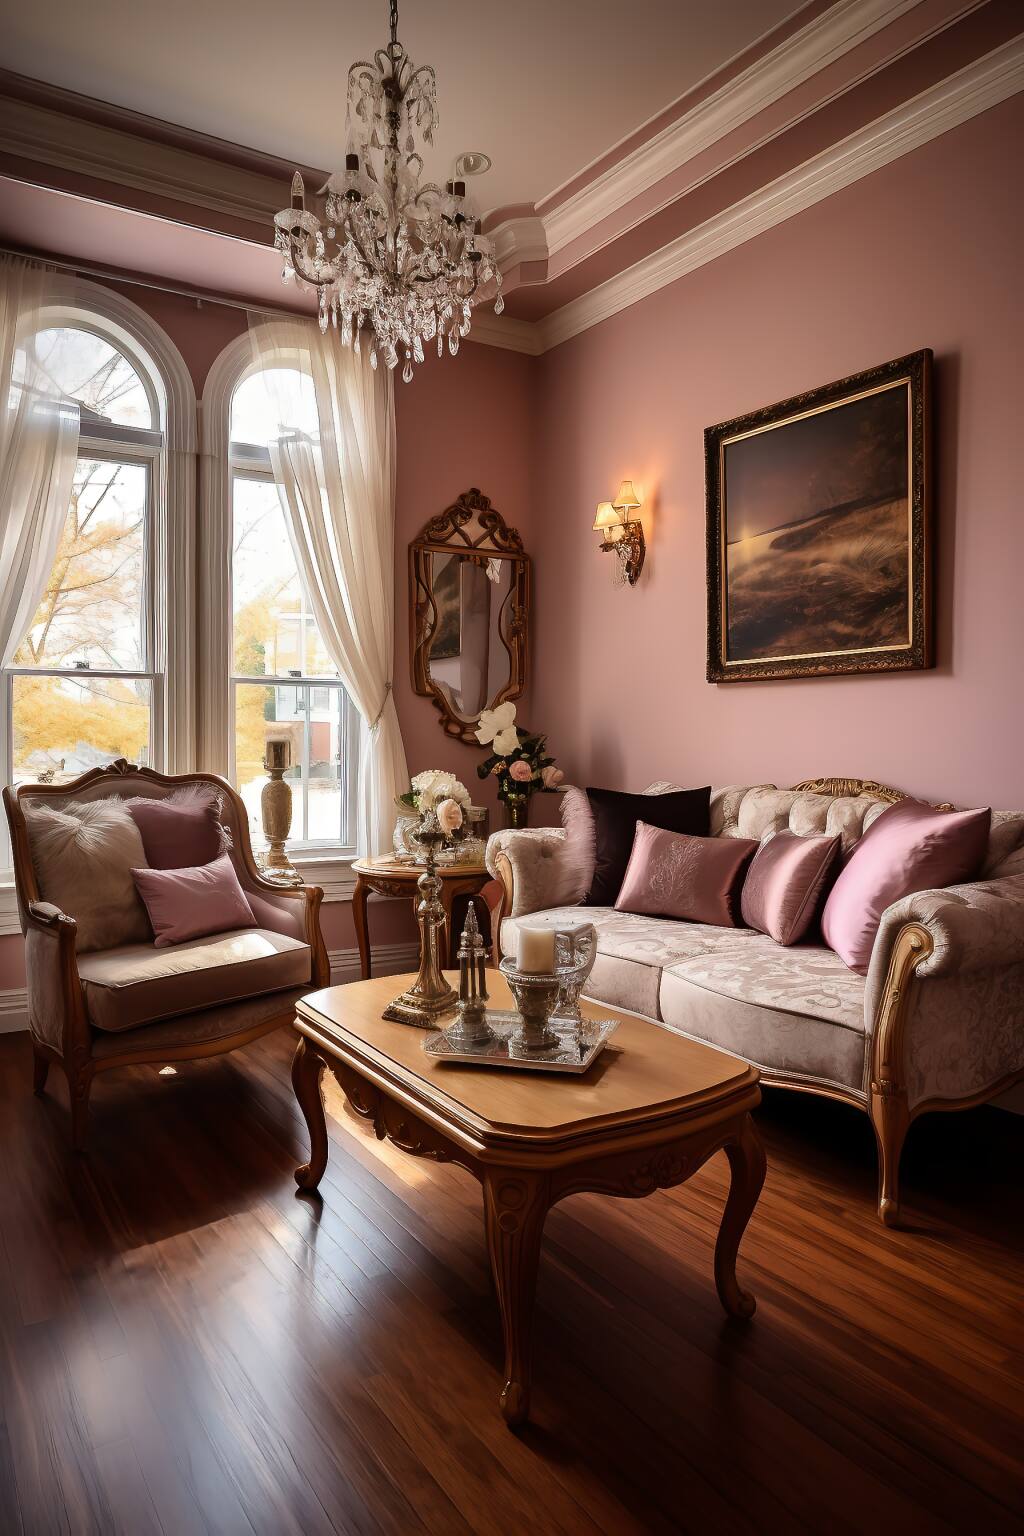 Ein Stimmungsvolles, Romantisches Wohnzimmer Mit Möbeln Im Viktorianischen Stil, Plüschigen Rosa Akzenten Und Einem Großen Kronleuchter In Einer Übergangsumgebung.